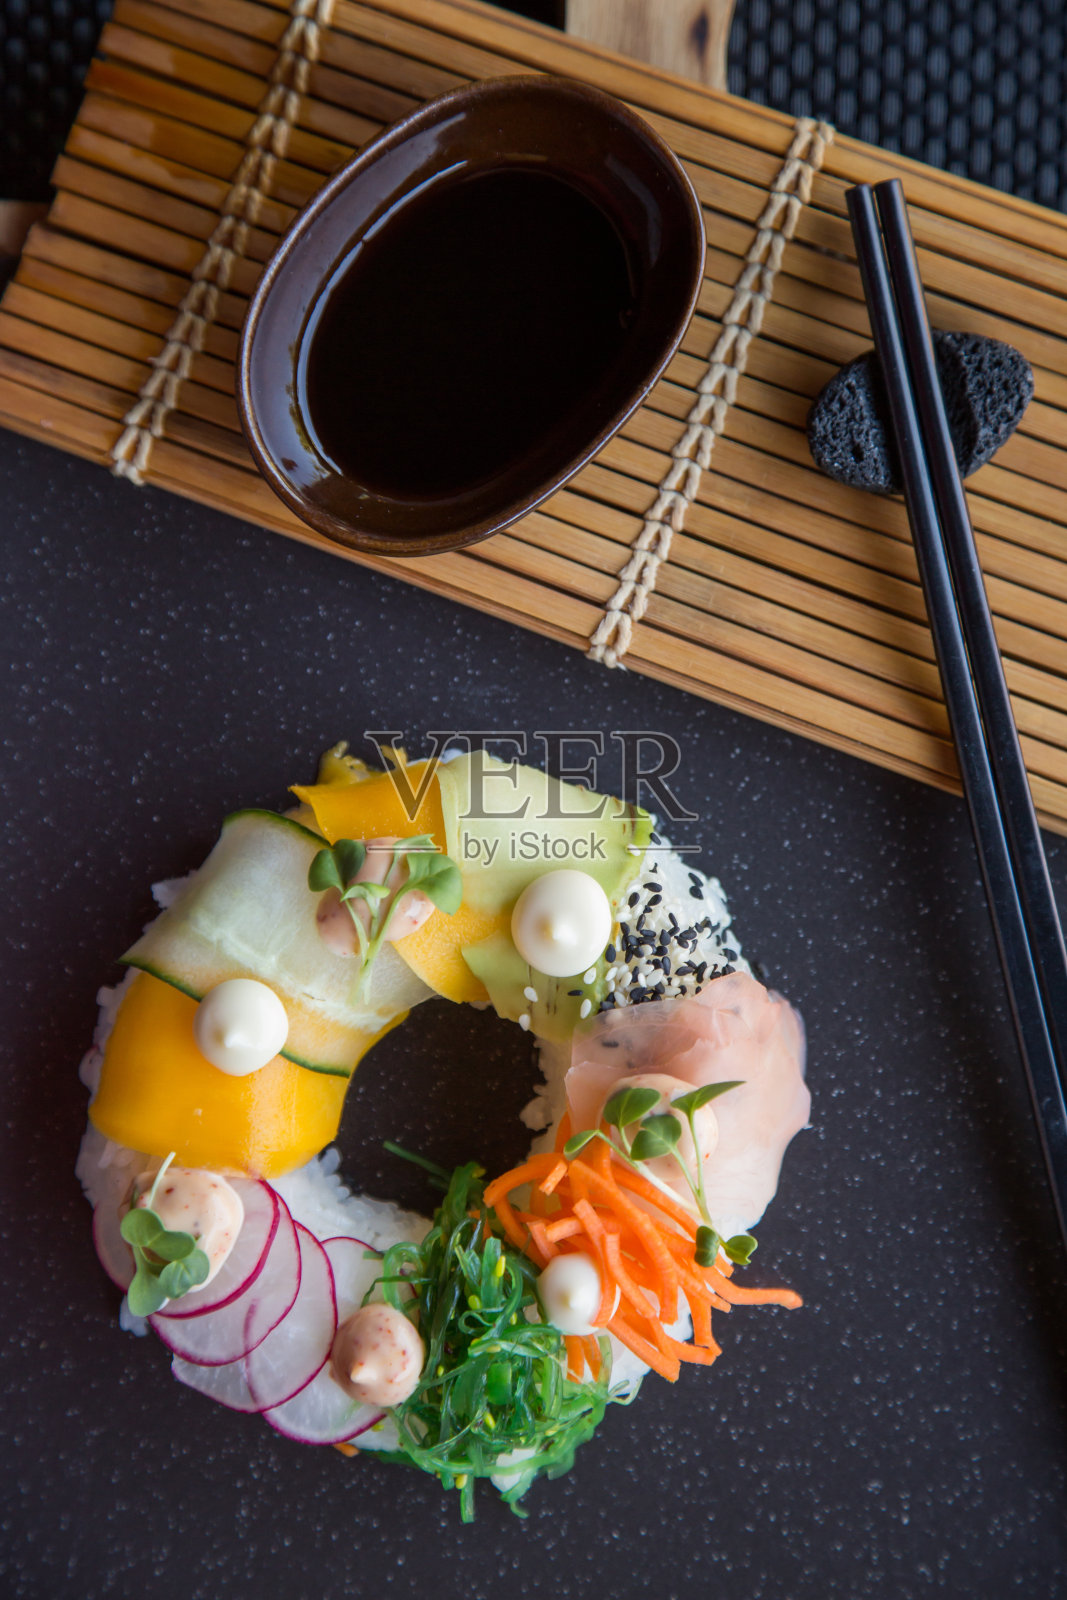 素菜寿司甜甜圈，配上姜、鳄梨、黄瓜、韭菜，放在石板上。Sushi-food混合动力车的趋势。高端美食照片摄影图片